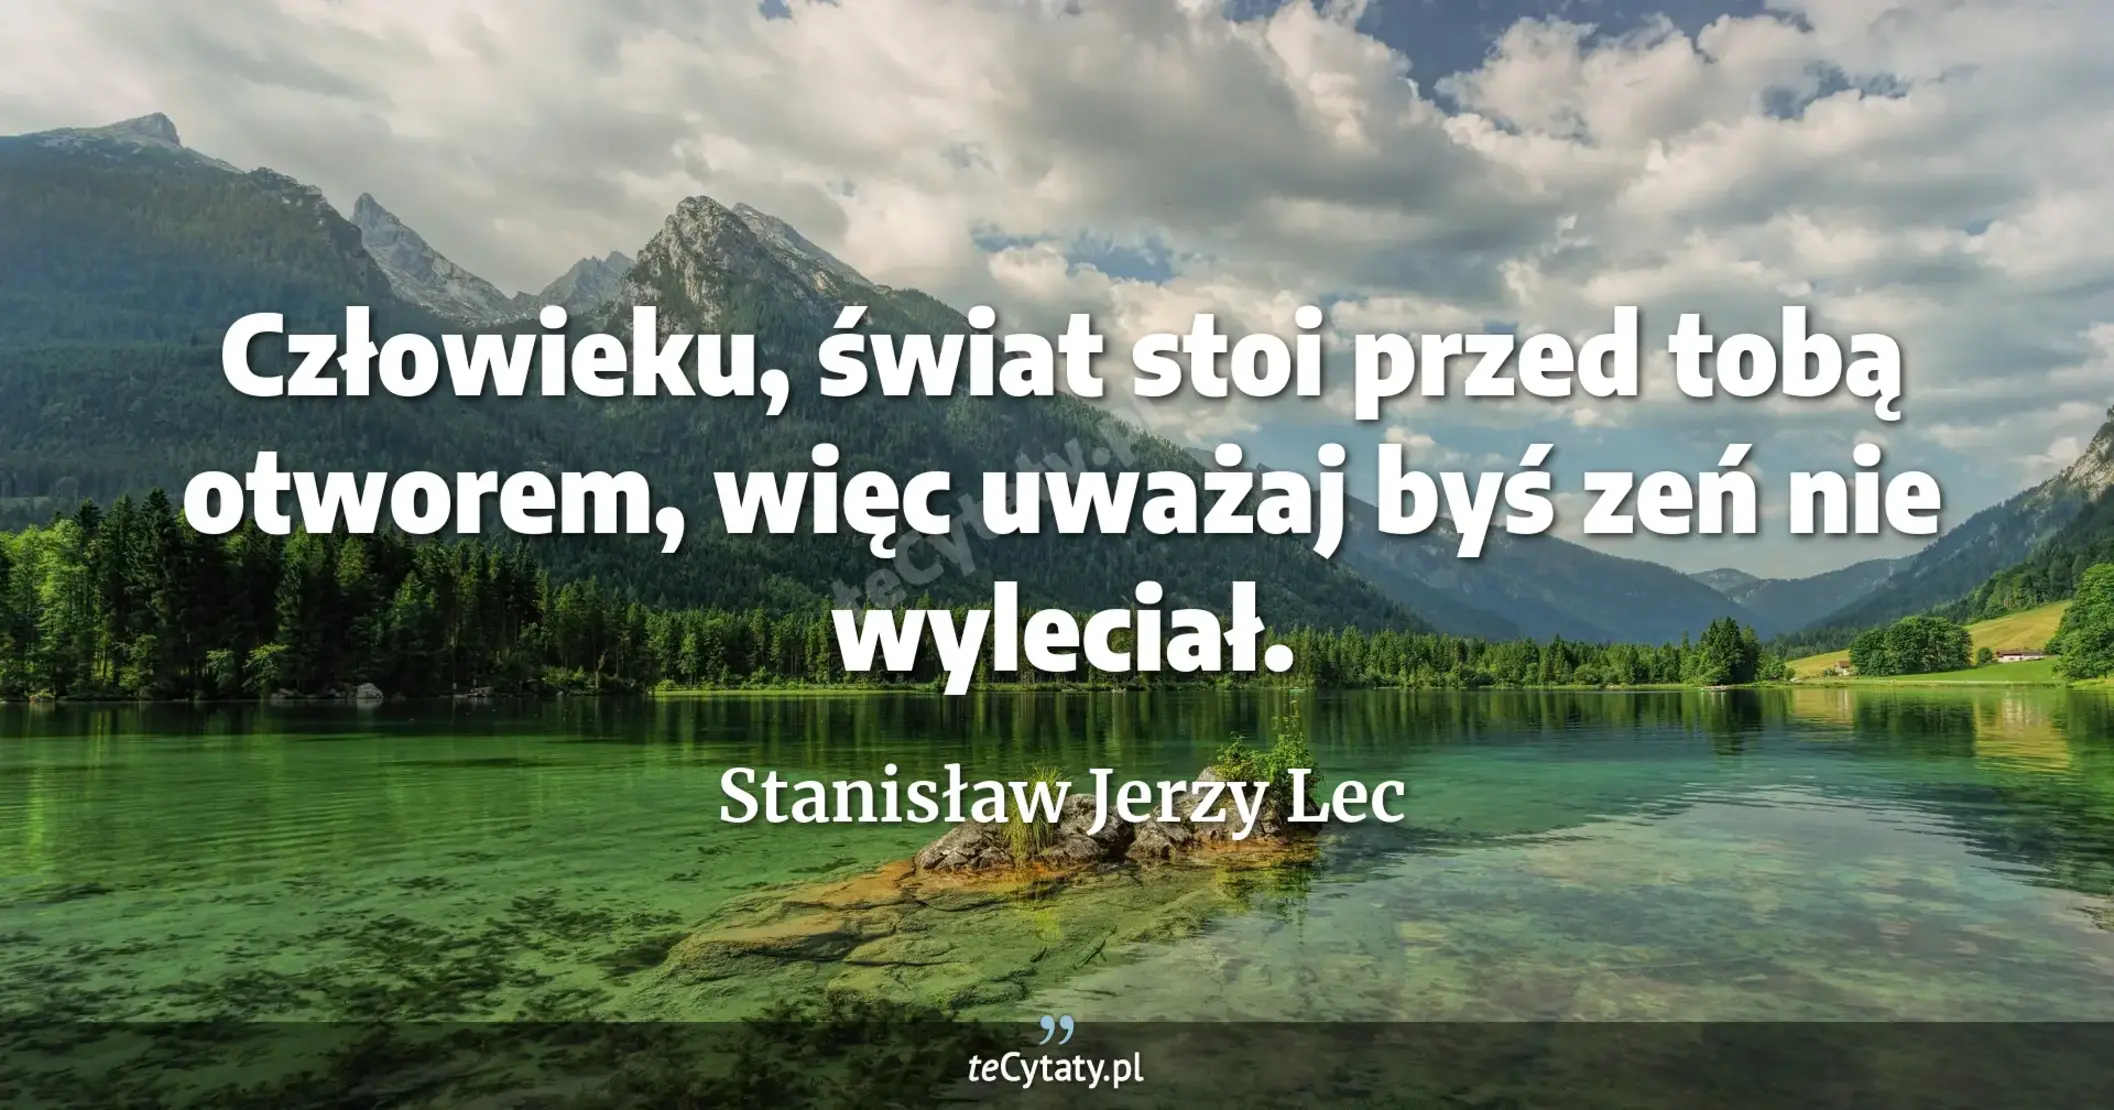 Człowieku, świat stoi przed tobą otworem, więc uważaj byś zeń nie wyleciał. - Stanisław Jerzy Lec